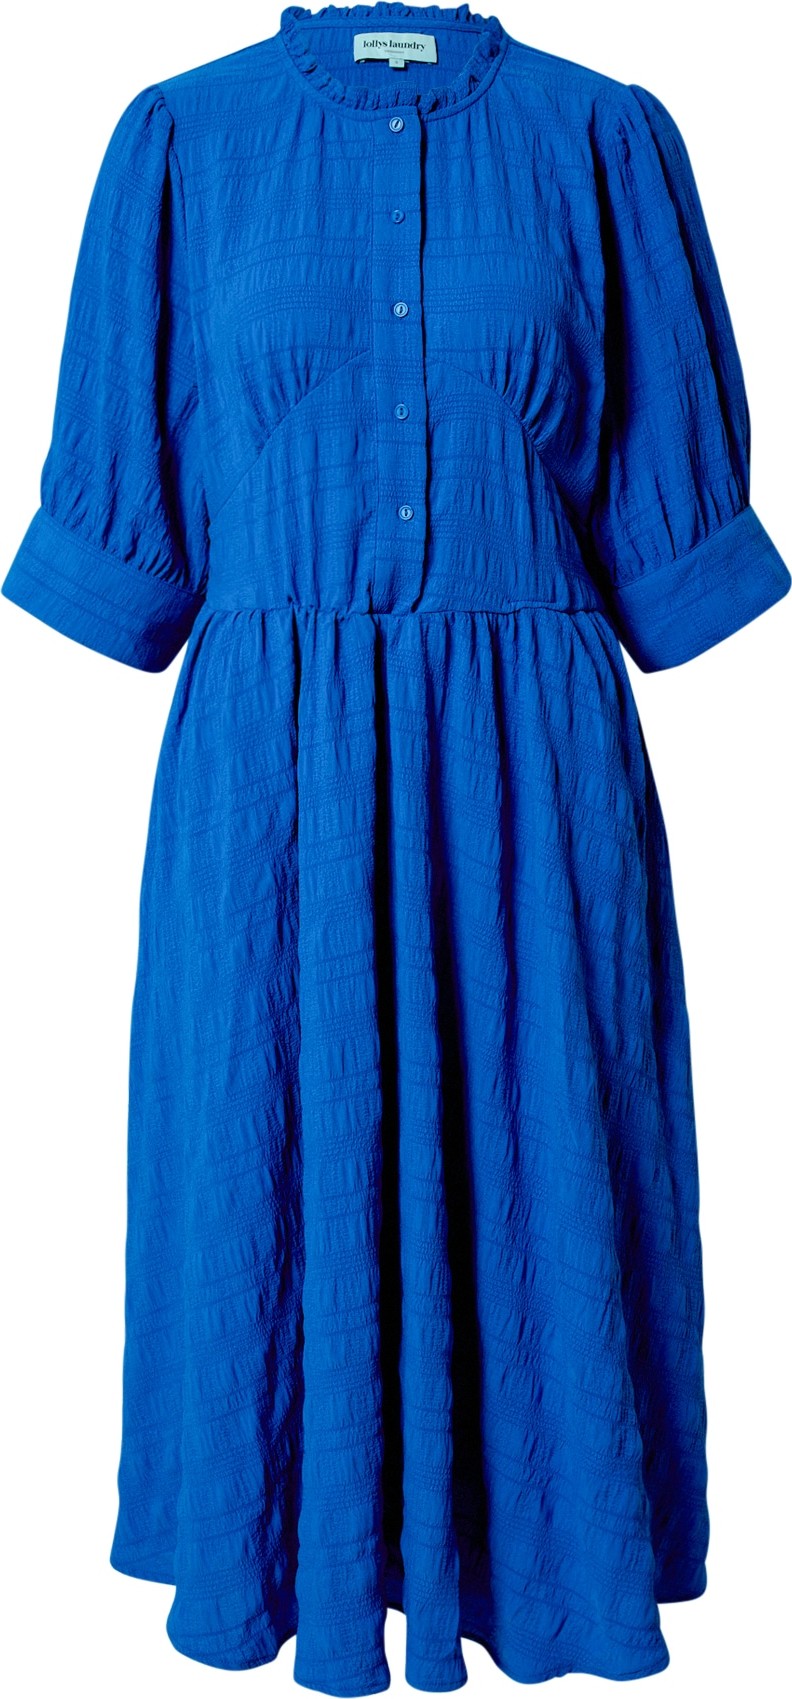 Lollys Laundry Košilové šaty 'Boston' královská modrá